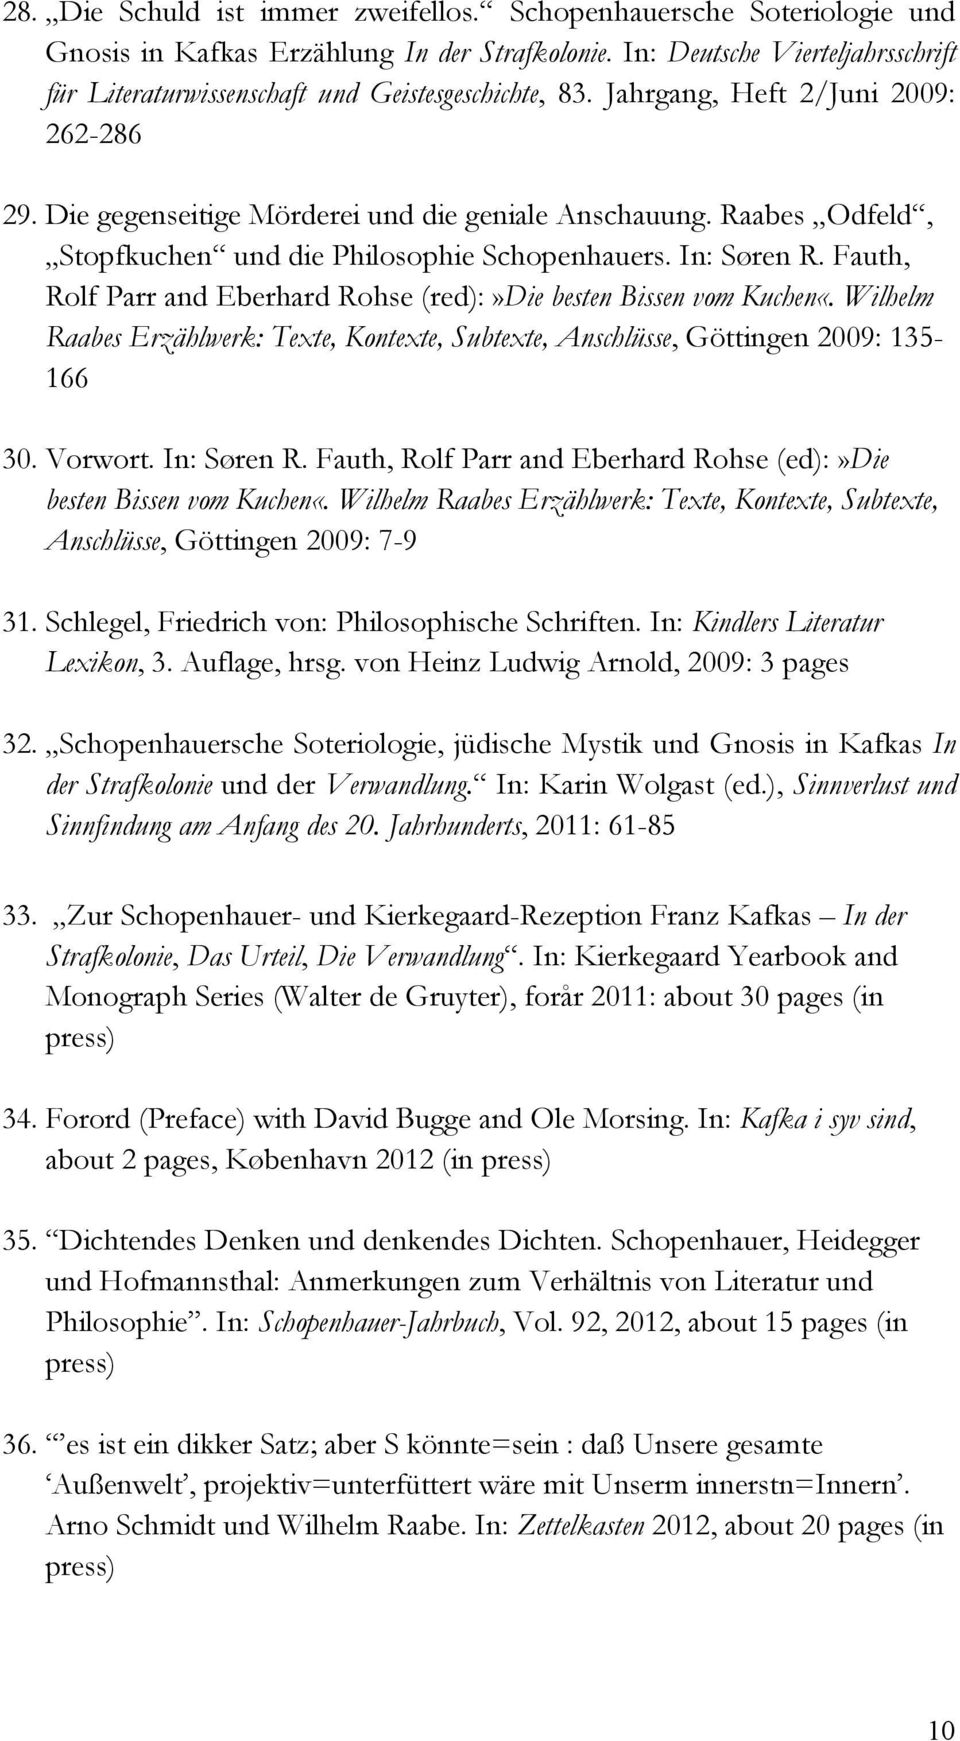 Raabes Odfeld, Stopfkuchen und die Philosophie Schopenhauers. In: Søren R. Fauth, Rolf Parr and Eberhard Rohse (red):»die besten Bissen vom Kuchen«.